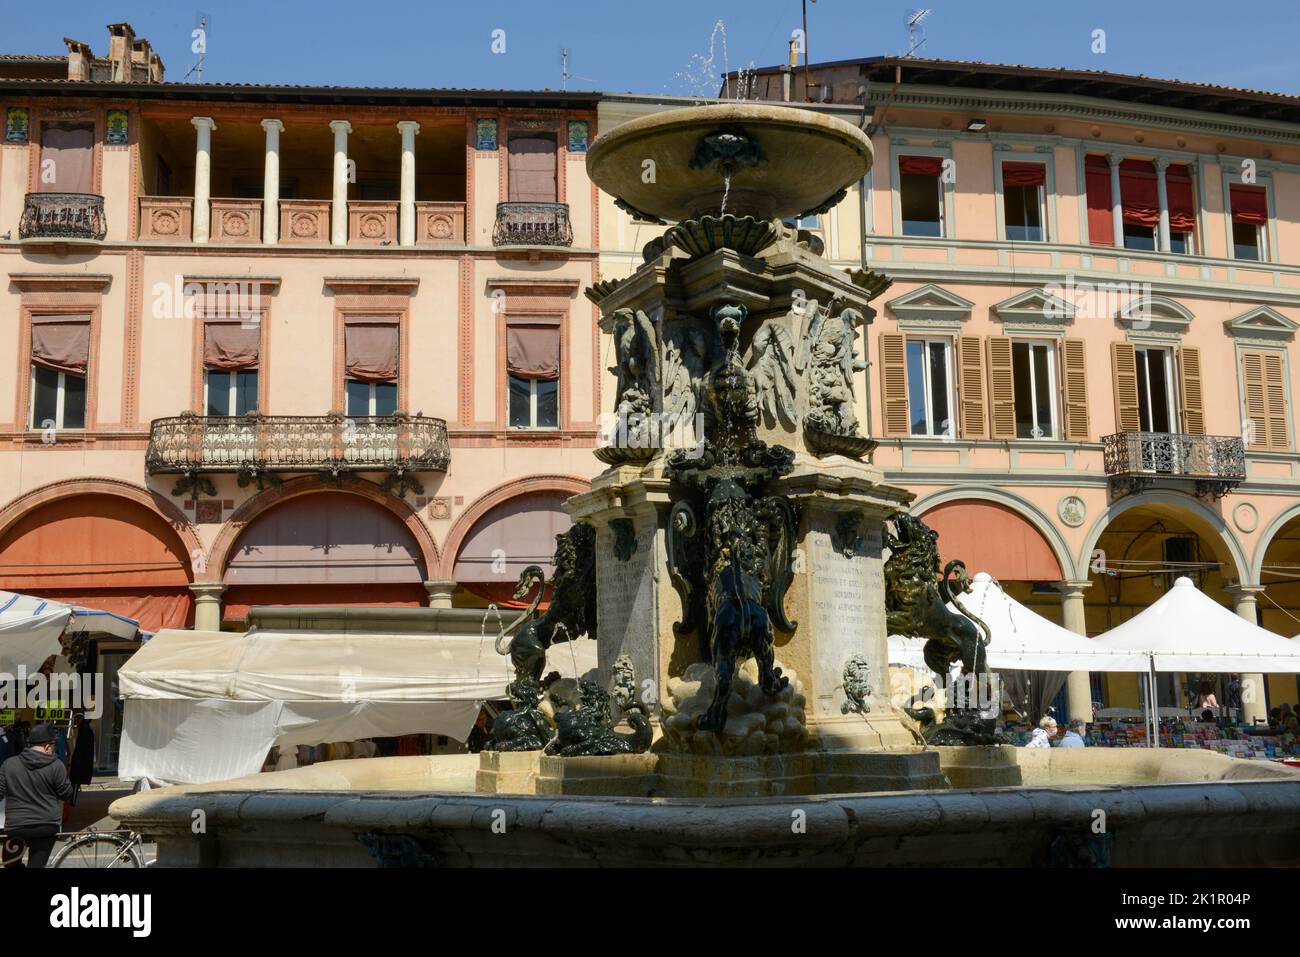 Faenza, Italy - 3 May 2022: the old center of Faenza on Italy Stock Photo